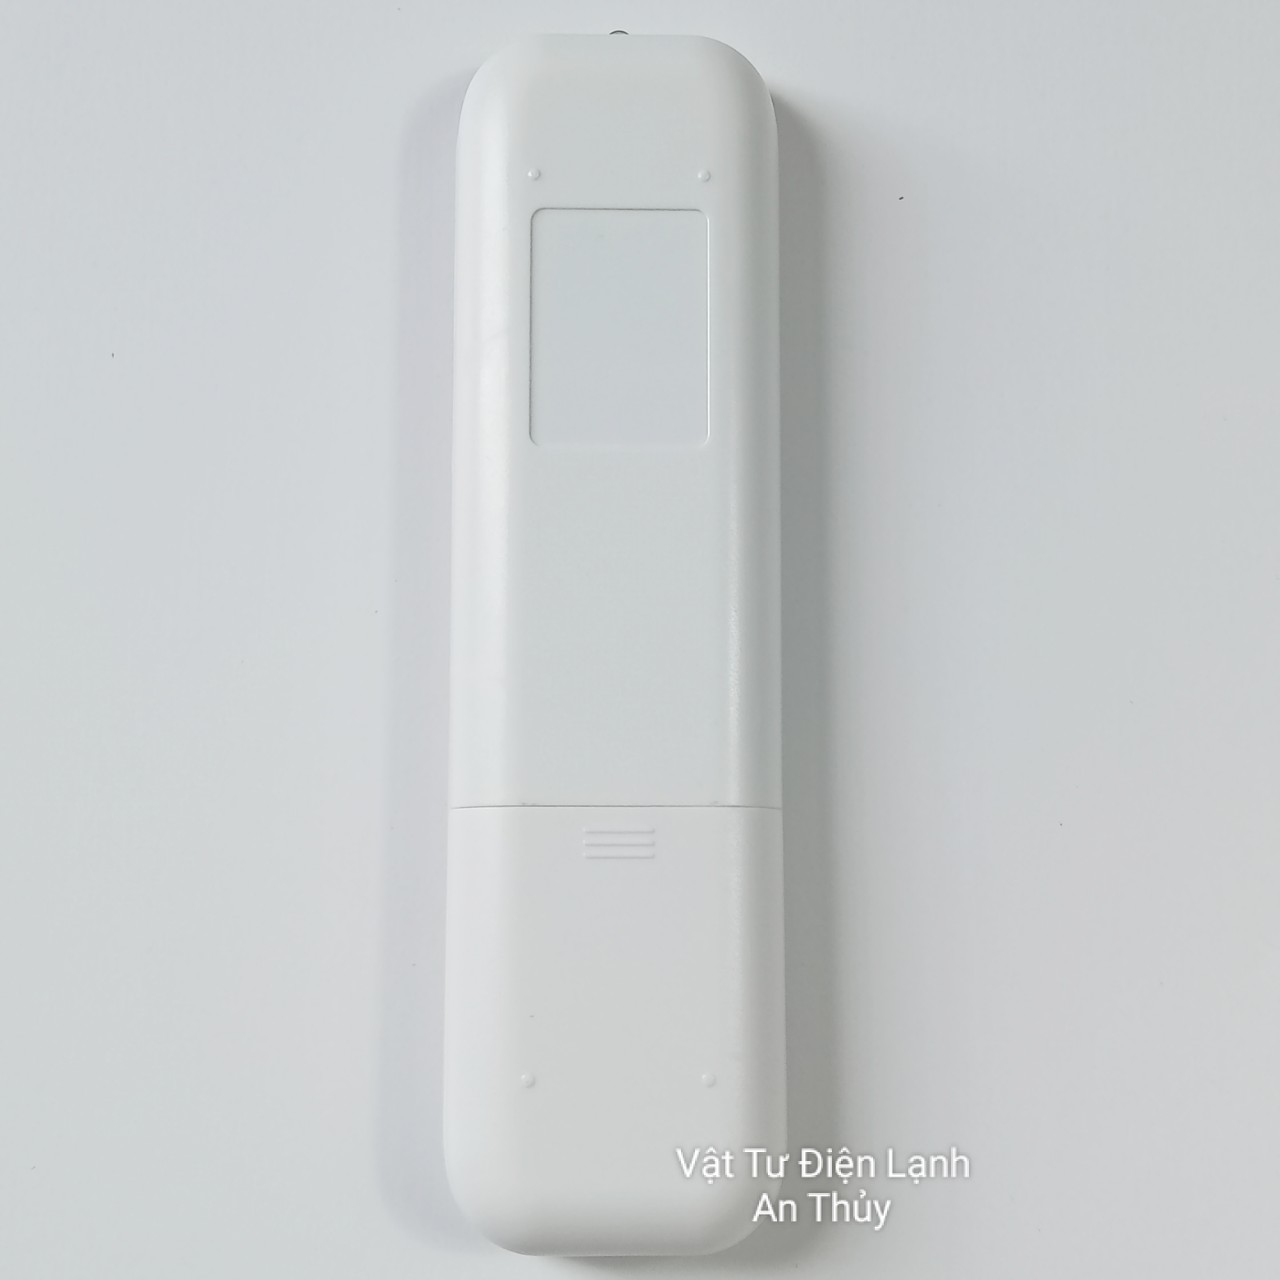 Remote máy lạnh CASPER mẫu mới